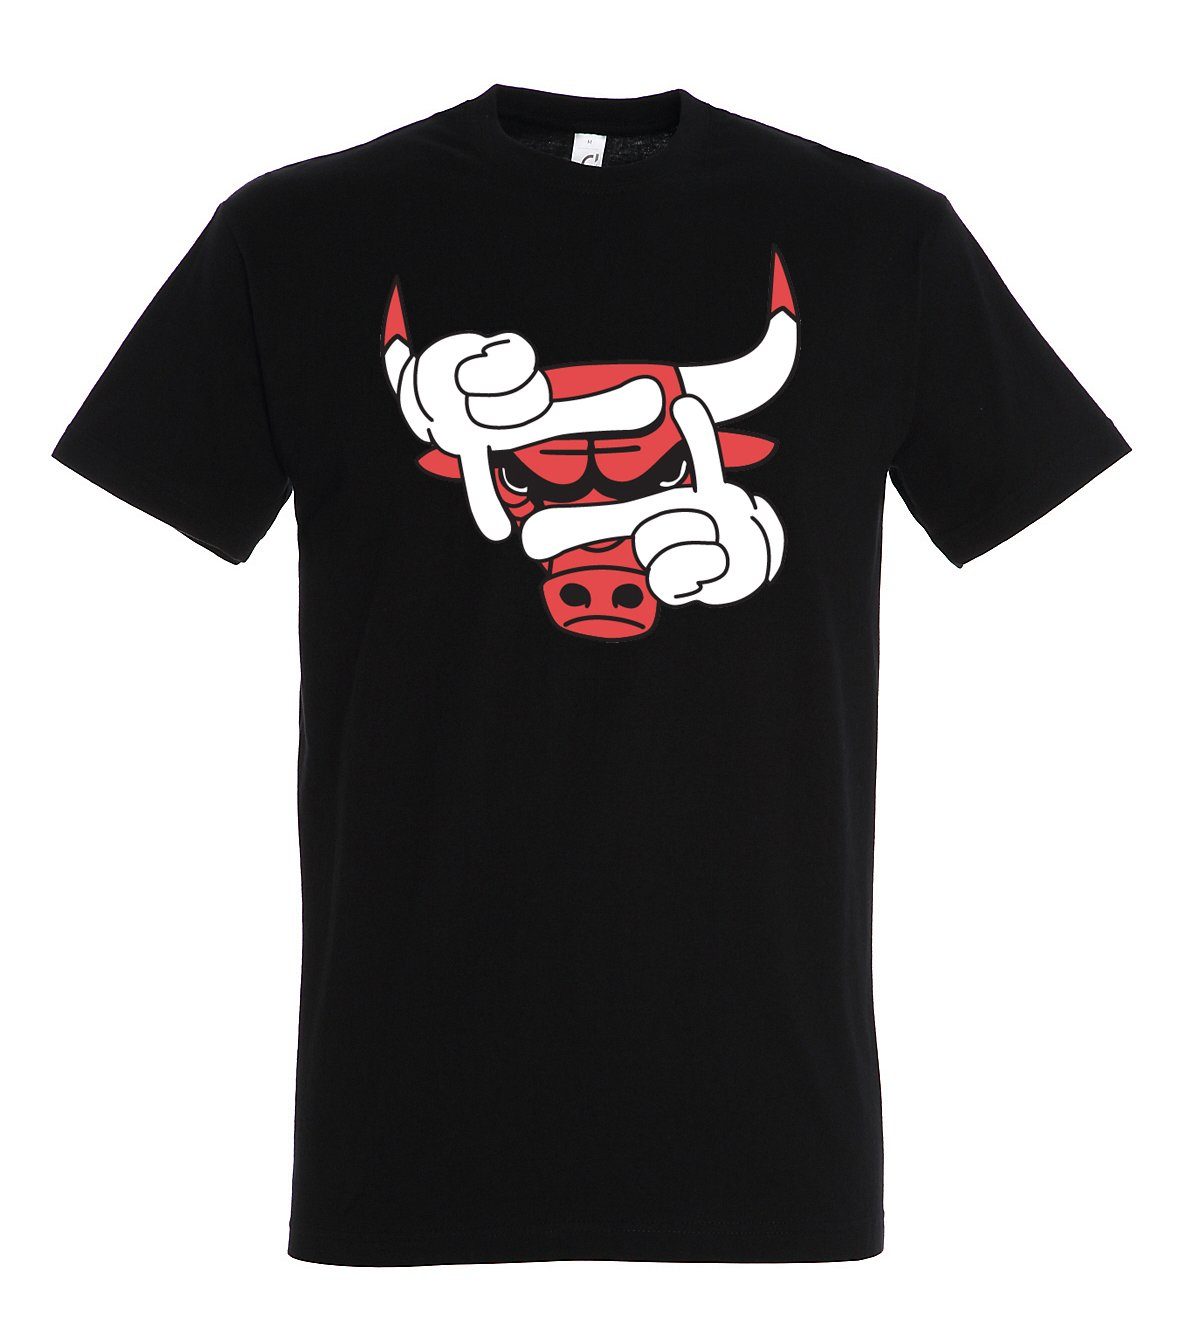 Frontprint T-Shirt T-Shirt Sport Bulls Herren mit Schwarz modischem Designz Youth